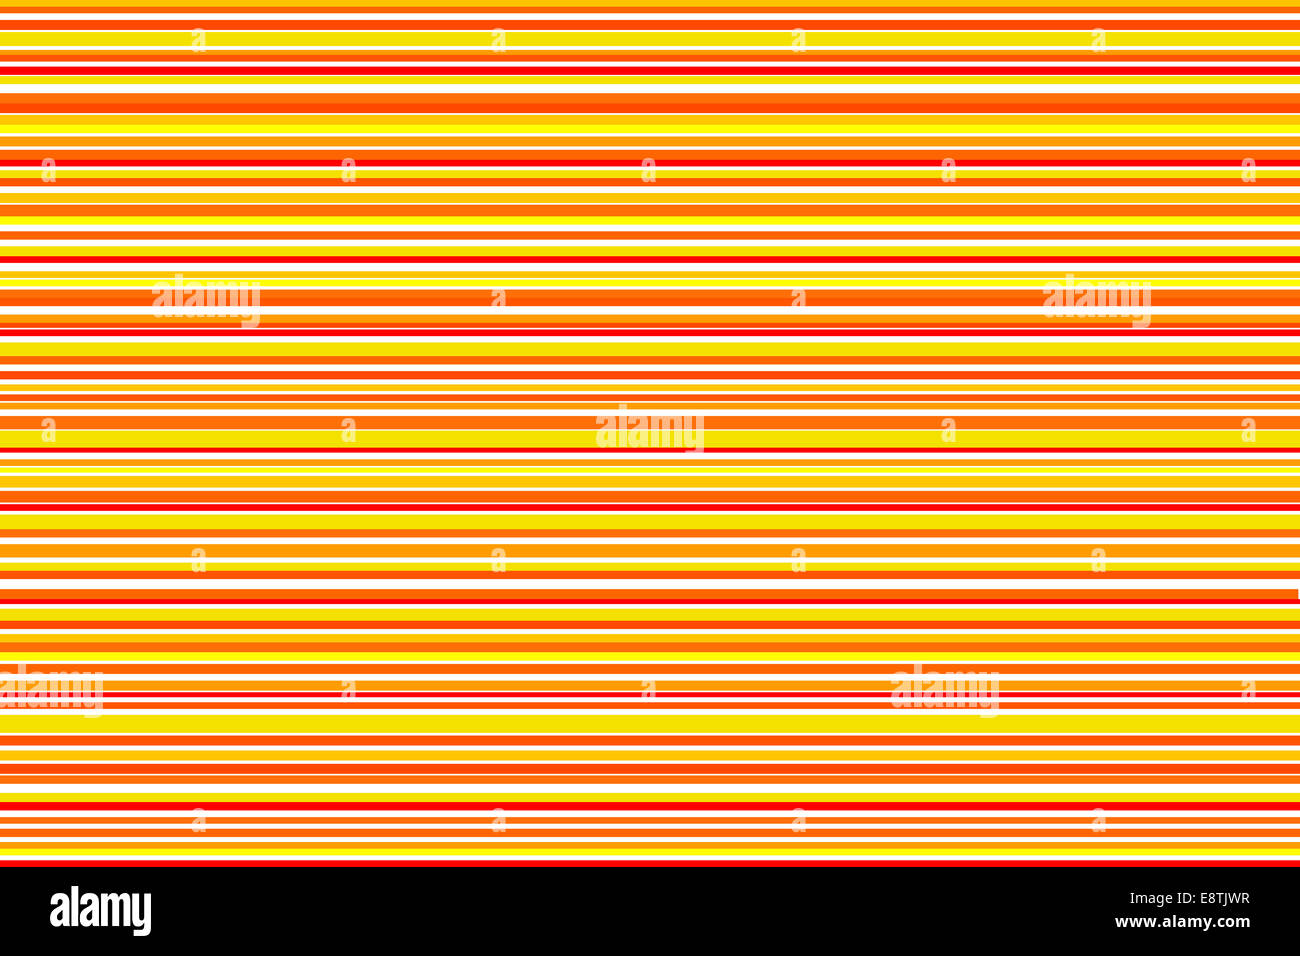 Rouge Orange et jaune léger horizontal stripe pattern. Banque D'Images